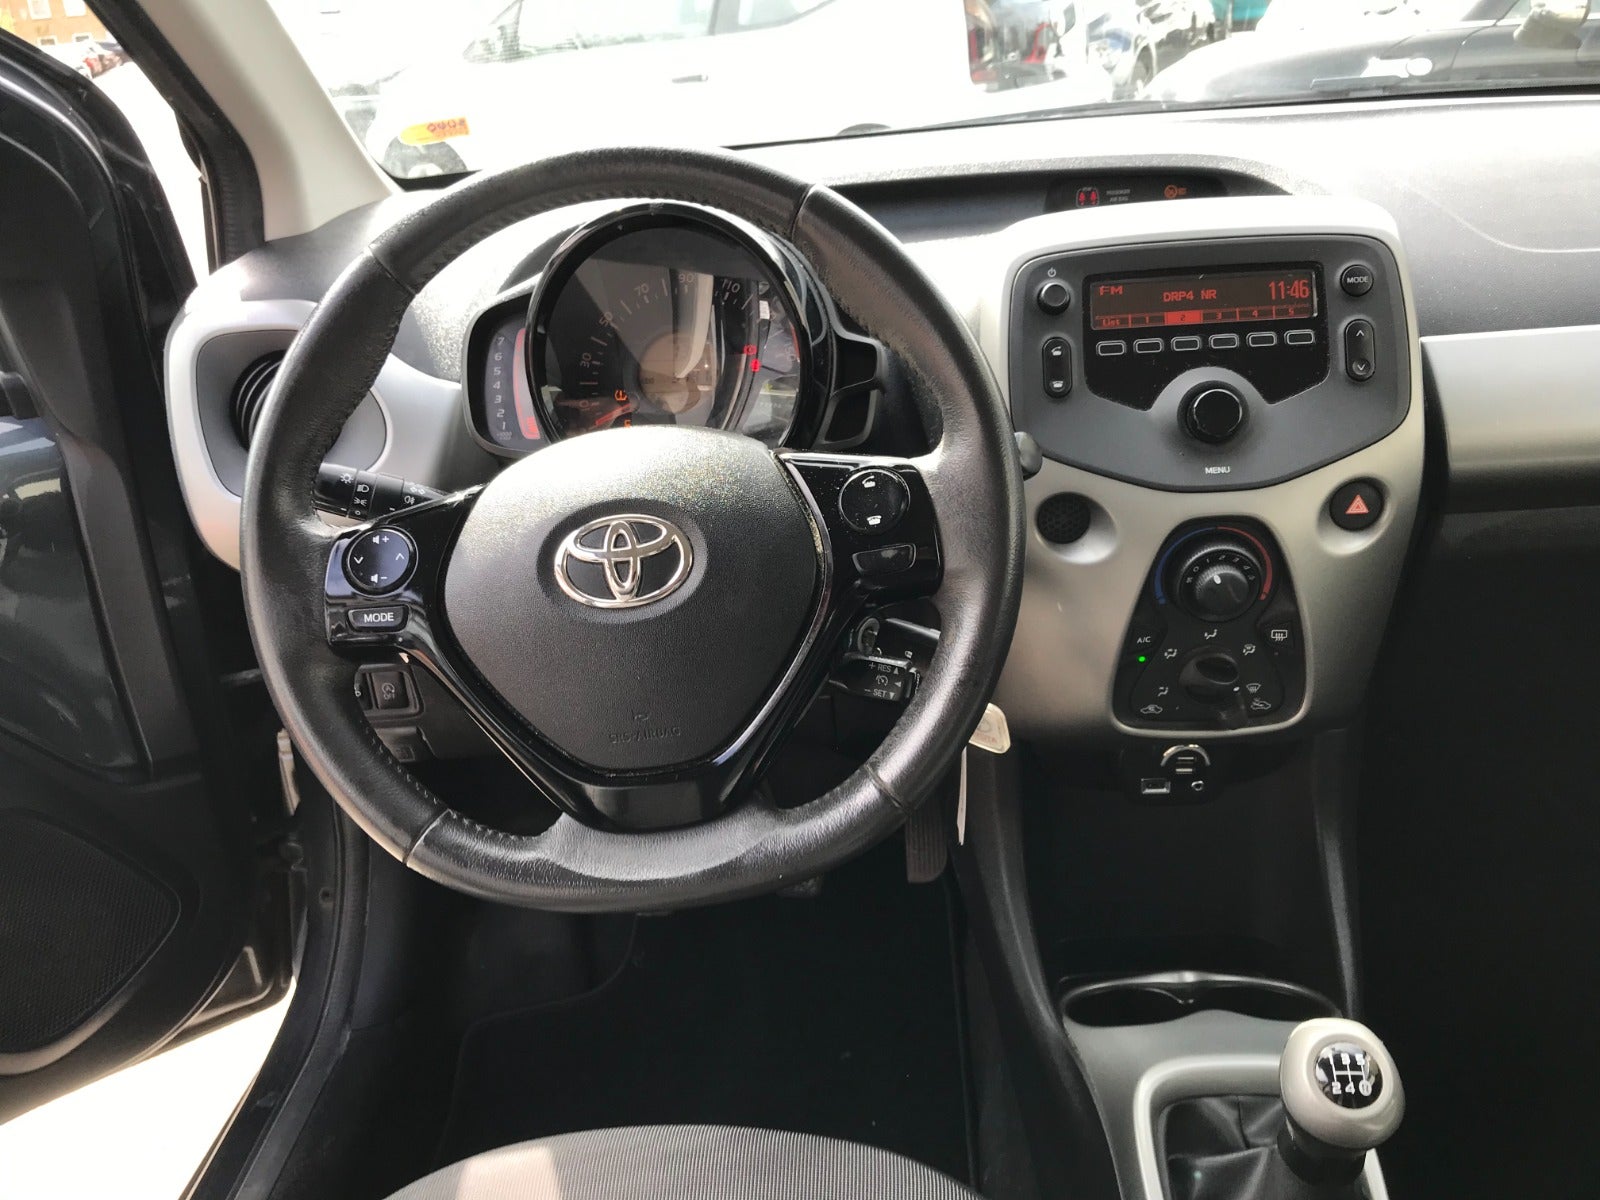 Toyota Aygo 2015